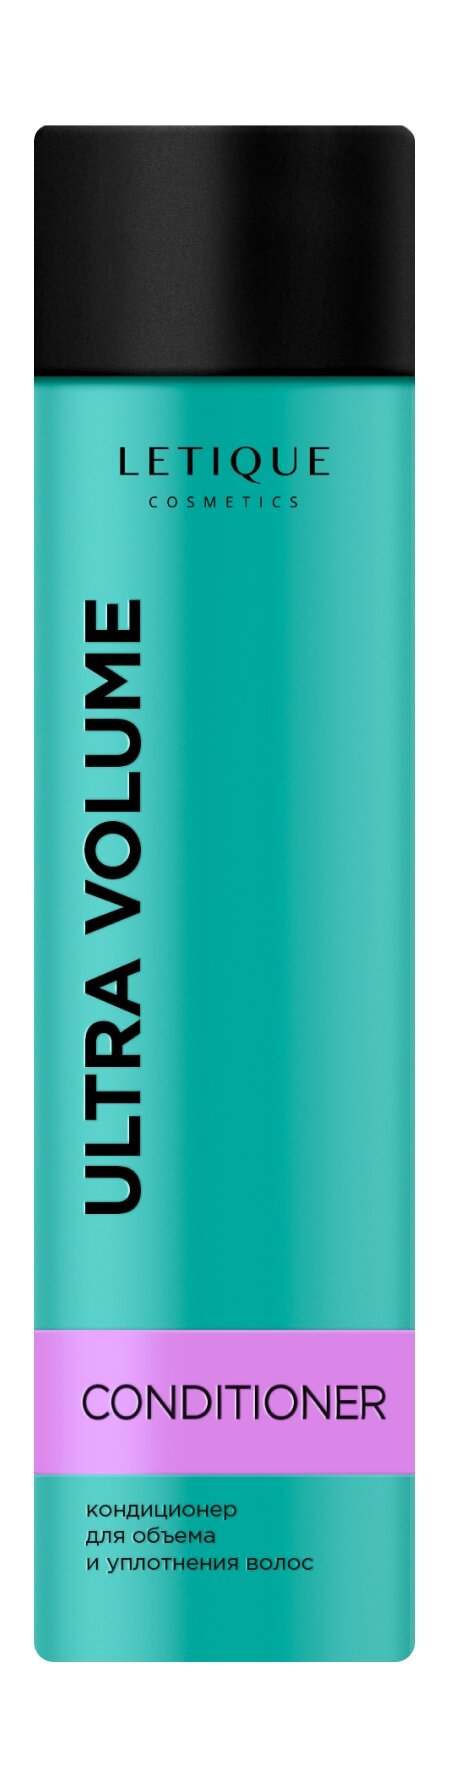 LETIQUE Кондиционер для волос Ultra Volume Conditioner для объема и уплотнения, 250 мл